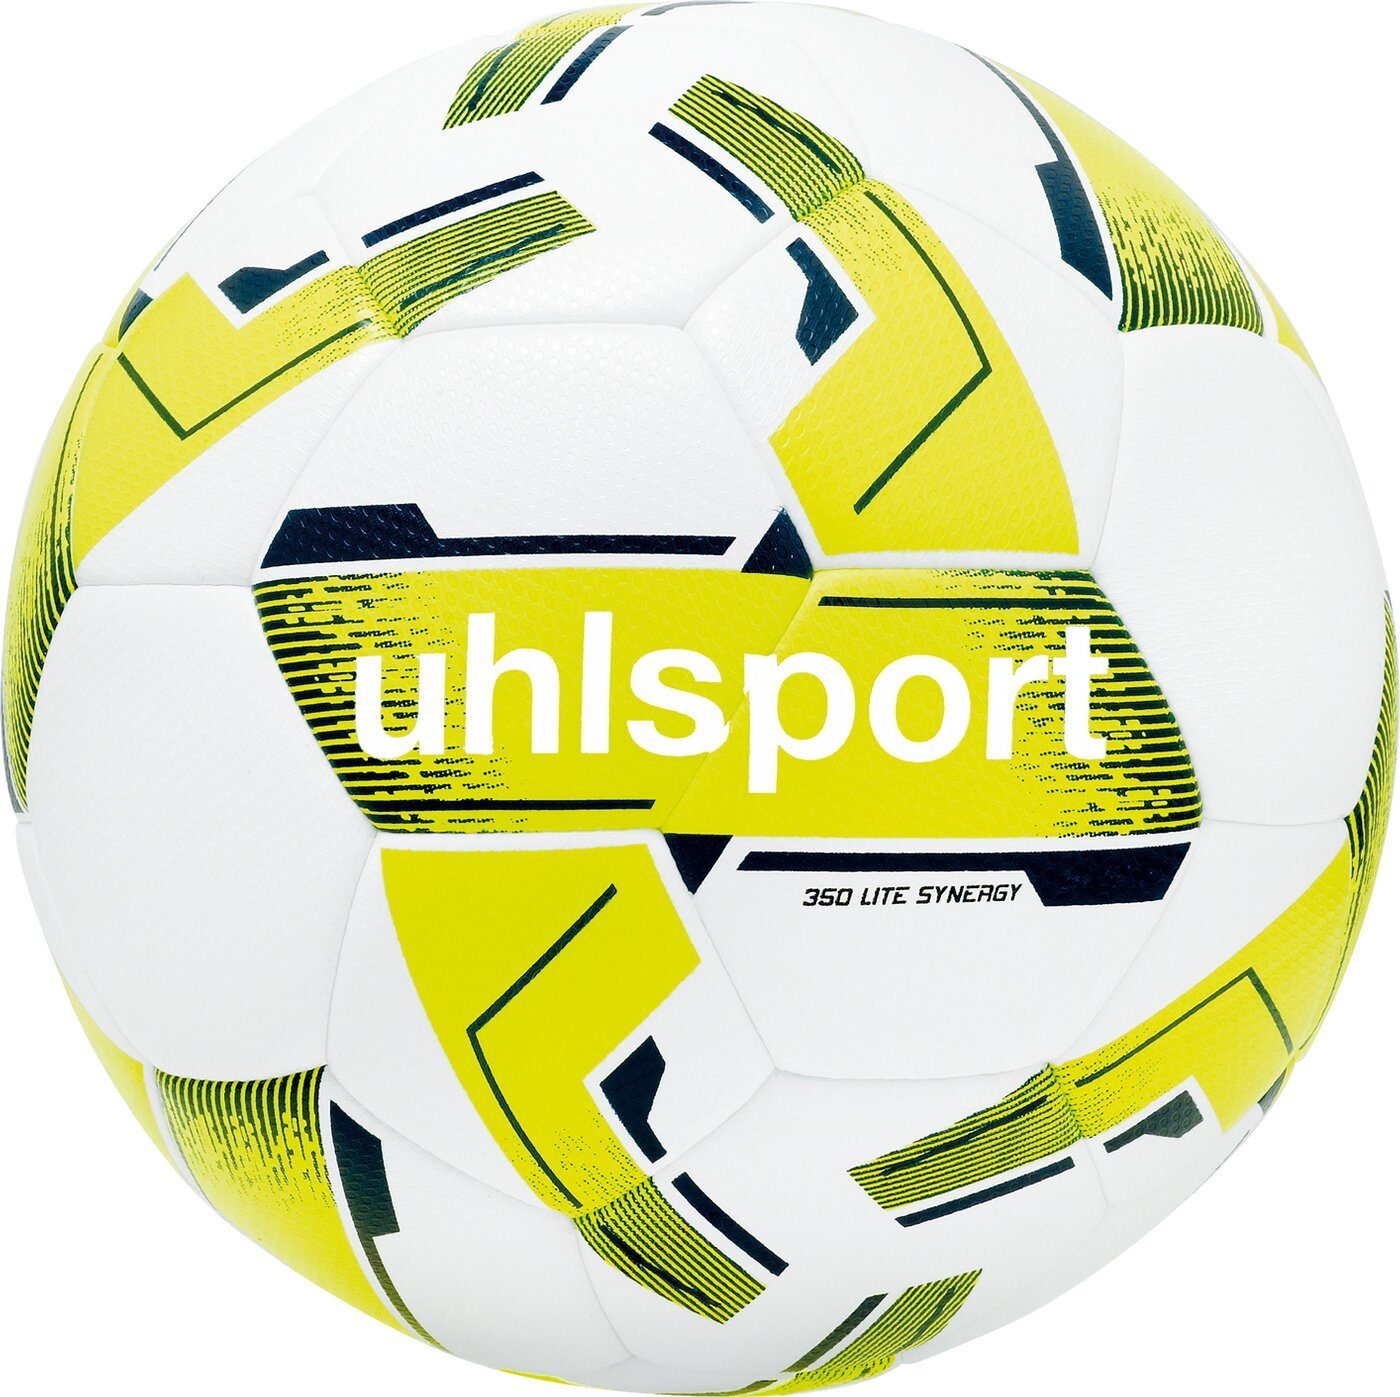 SYNERGY uhlsport LITE 350 Fußball